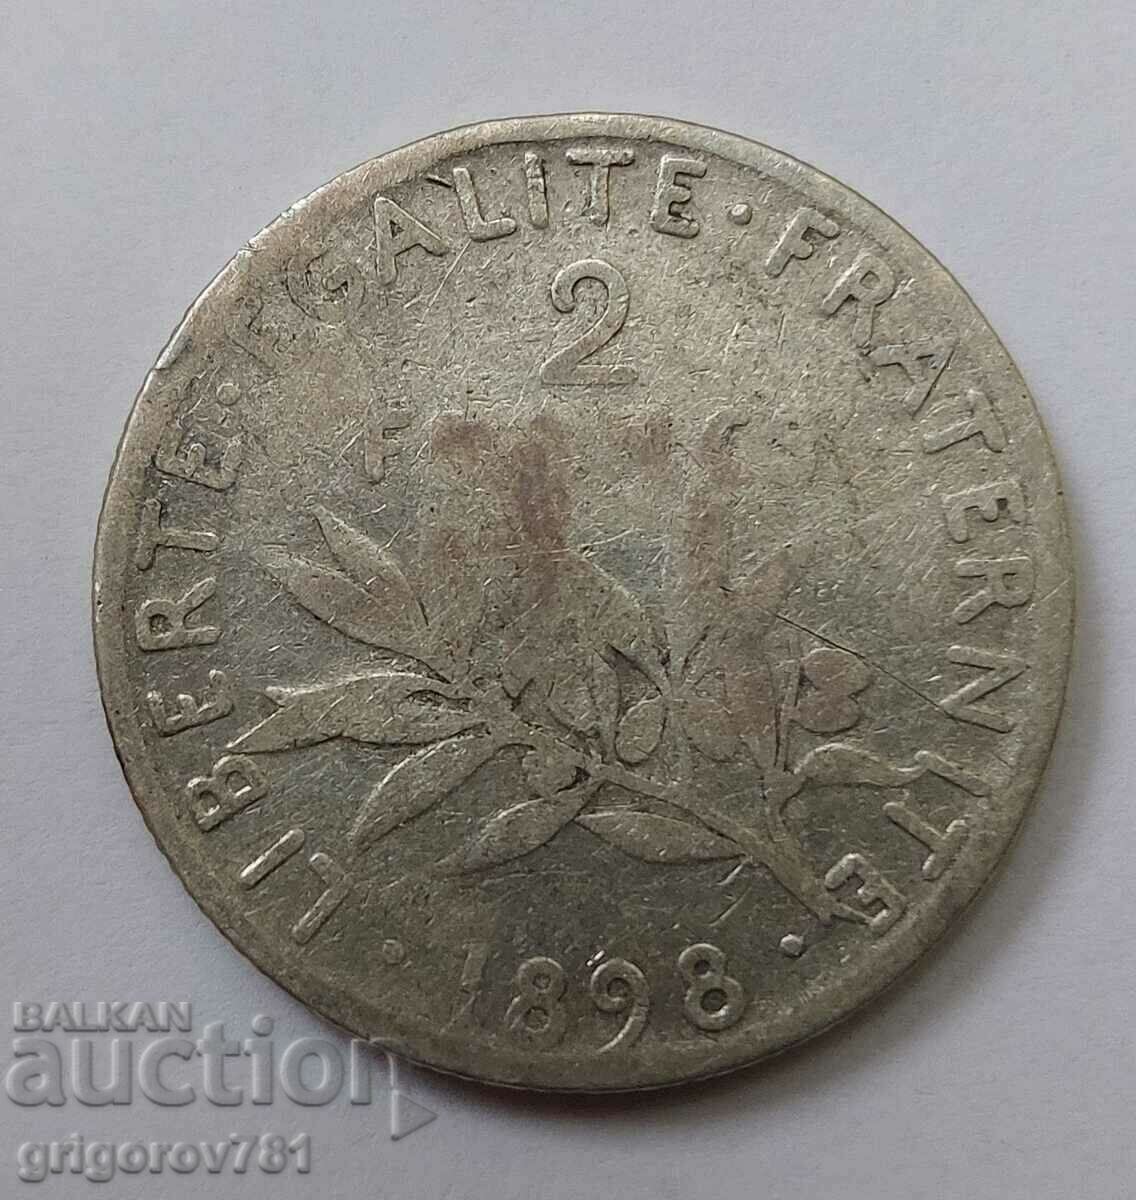 2 Franci Argint Franta 1898 - Moneda de argint #153